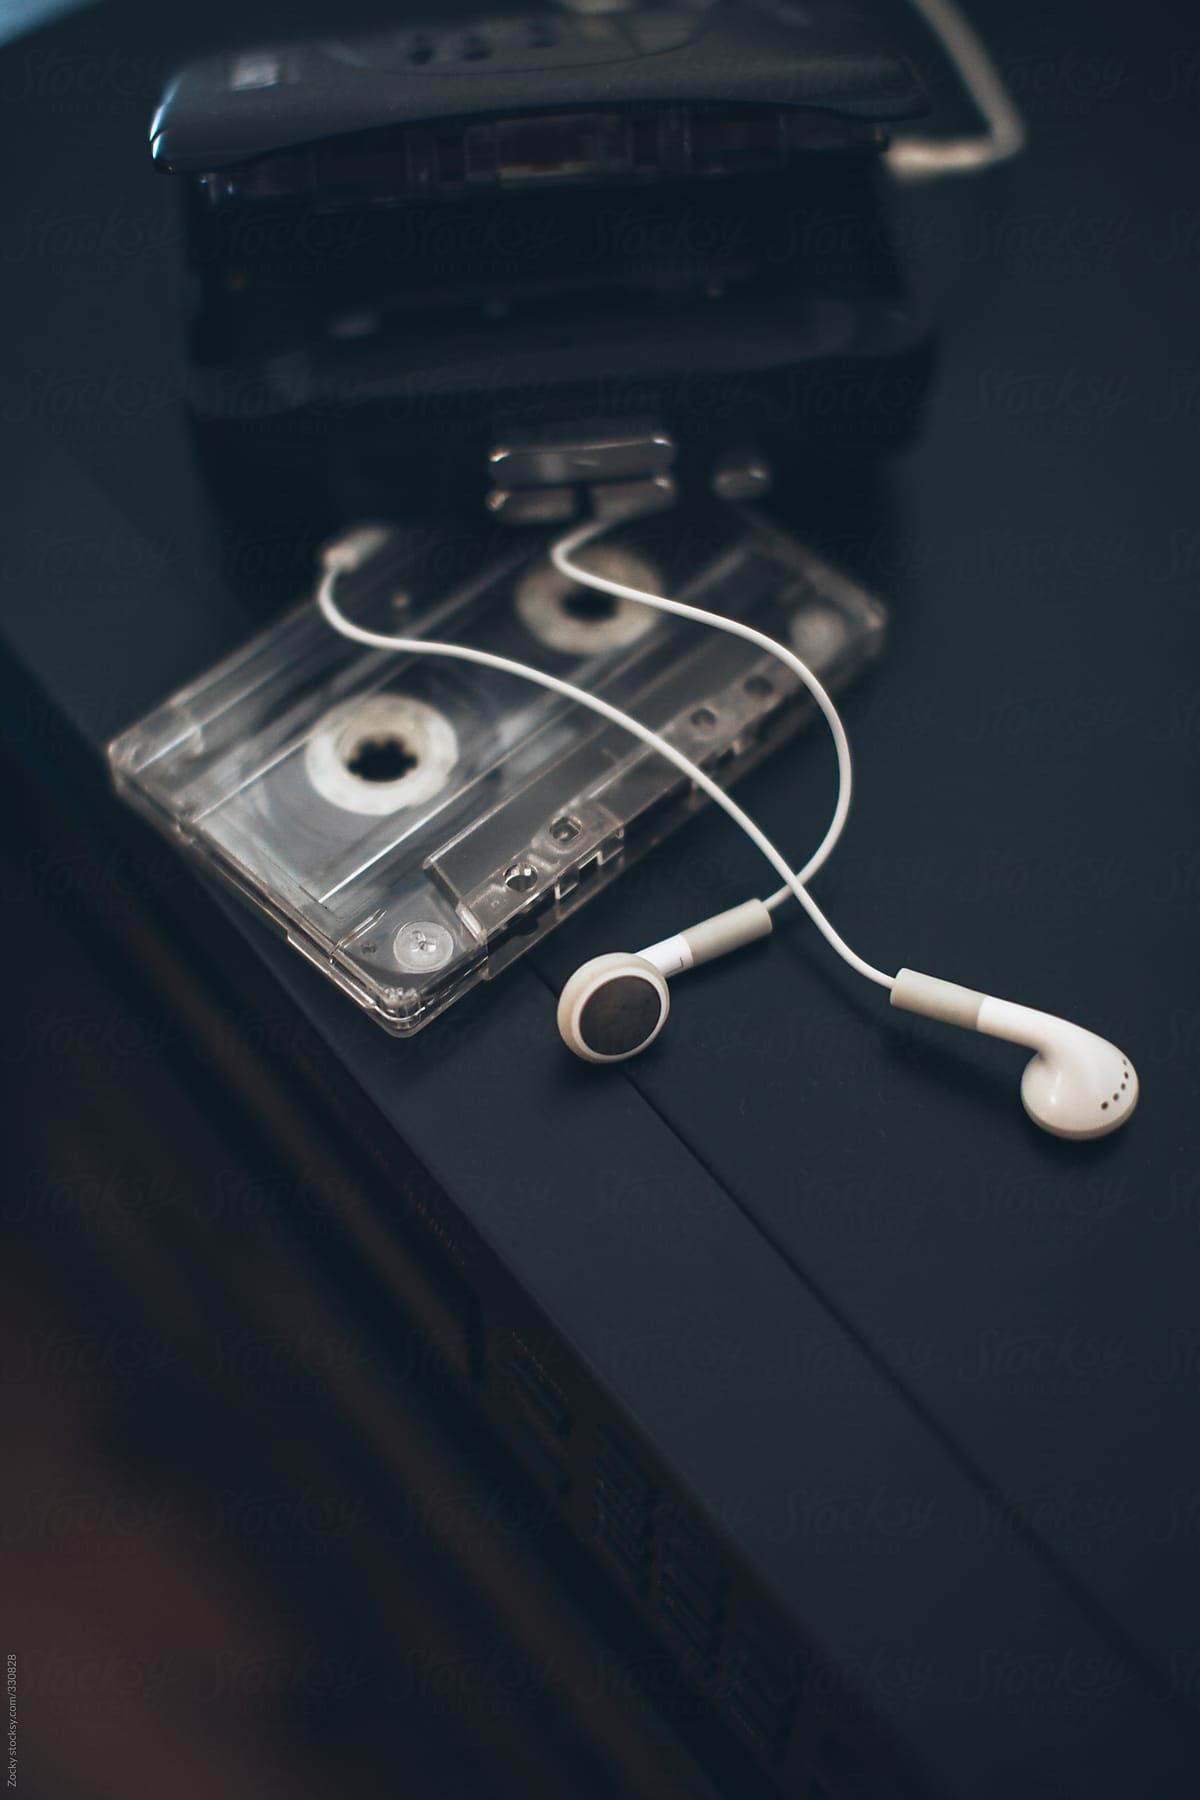  Handy Musik Hintergrundbild 1200x1800. Walkman And Cassettes. iPhone wallpaper music, Music wallpaper, iPhone wallpaper